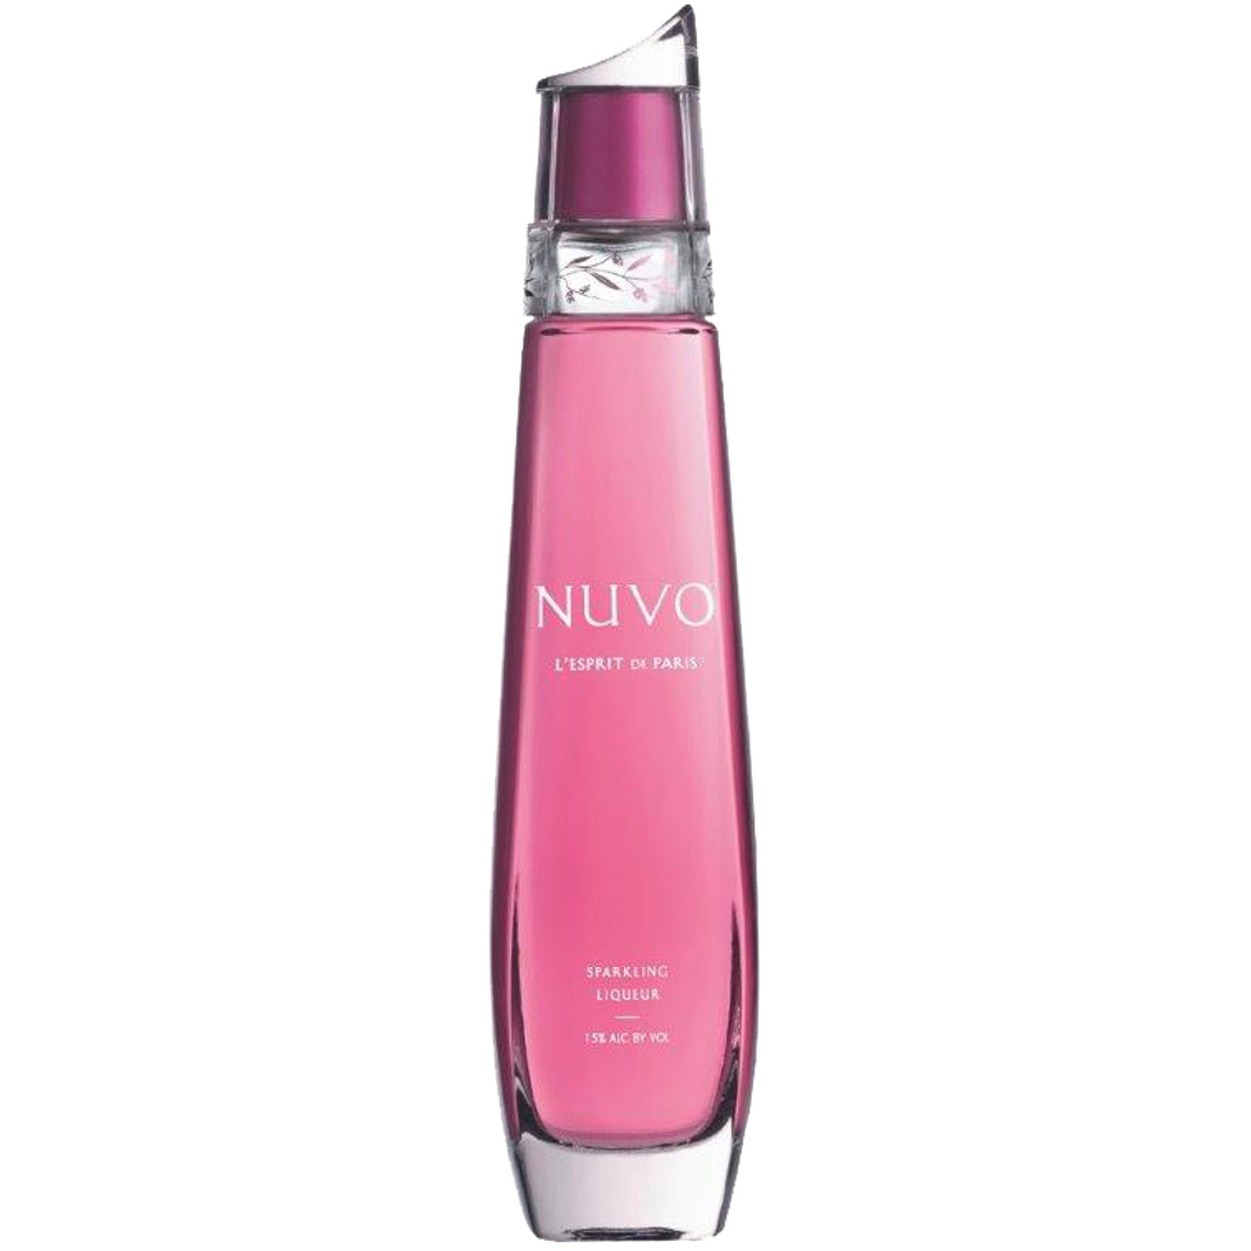 Nuvo - Sparkling Liqueur 70cl